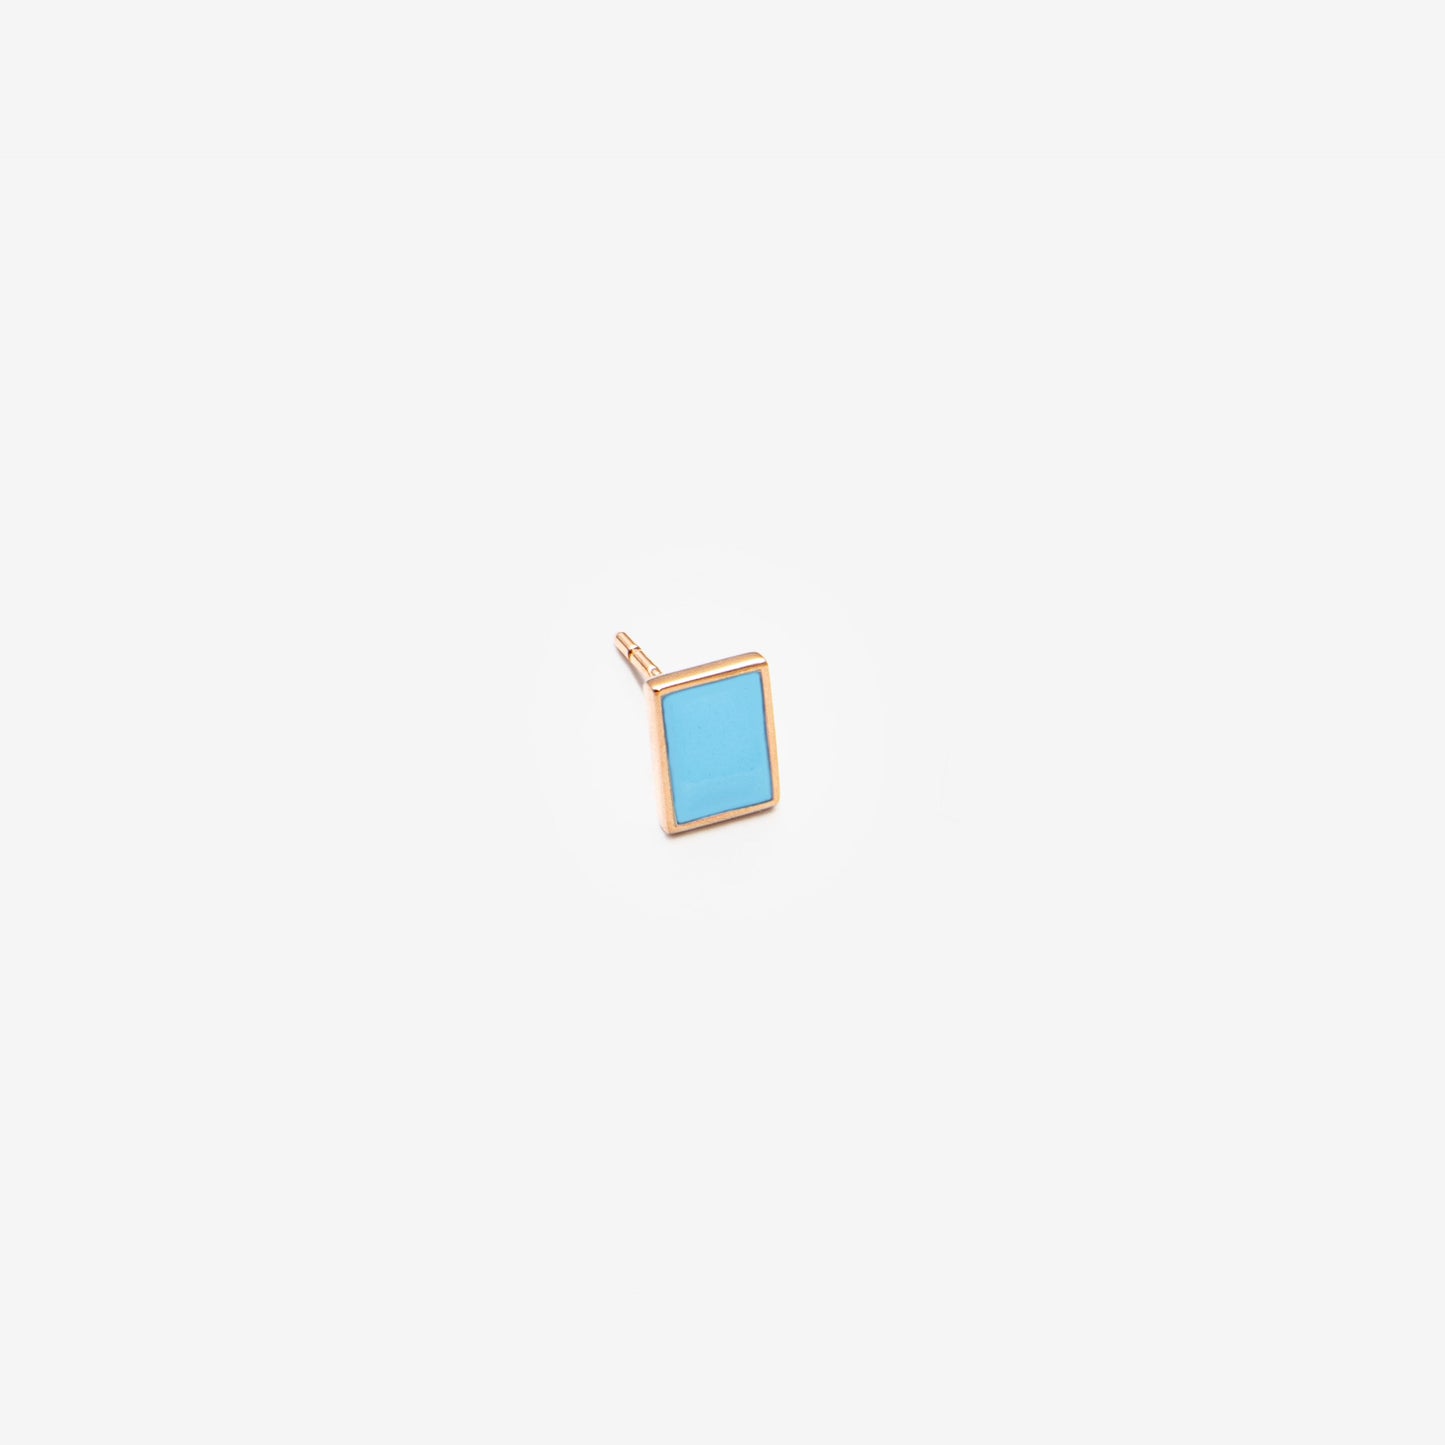 Floating rectangle light blue single earring